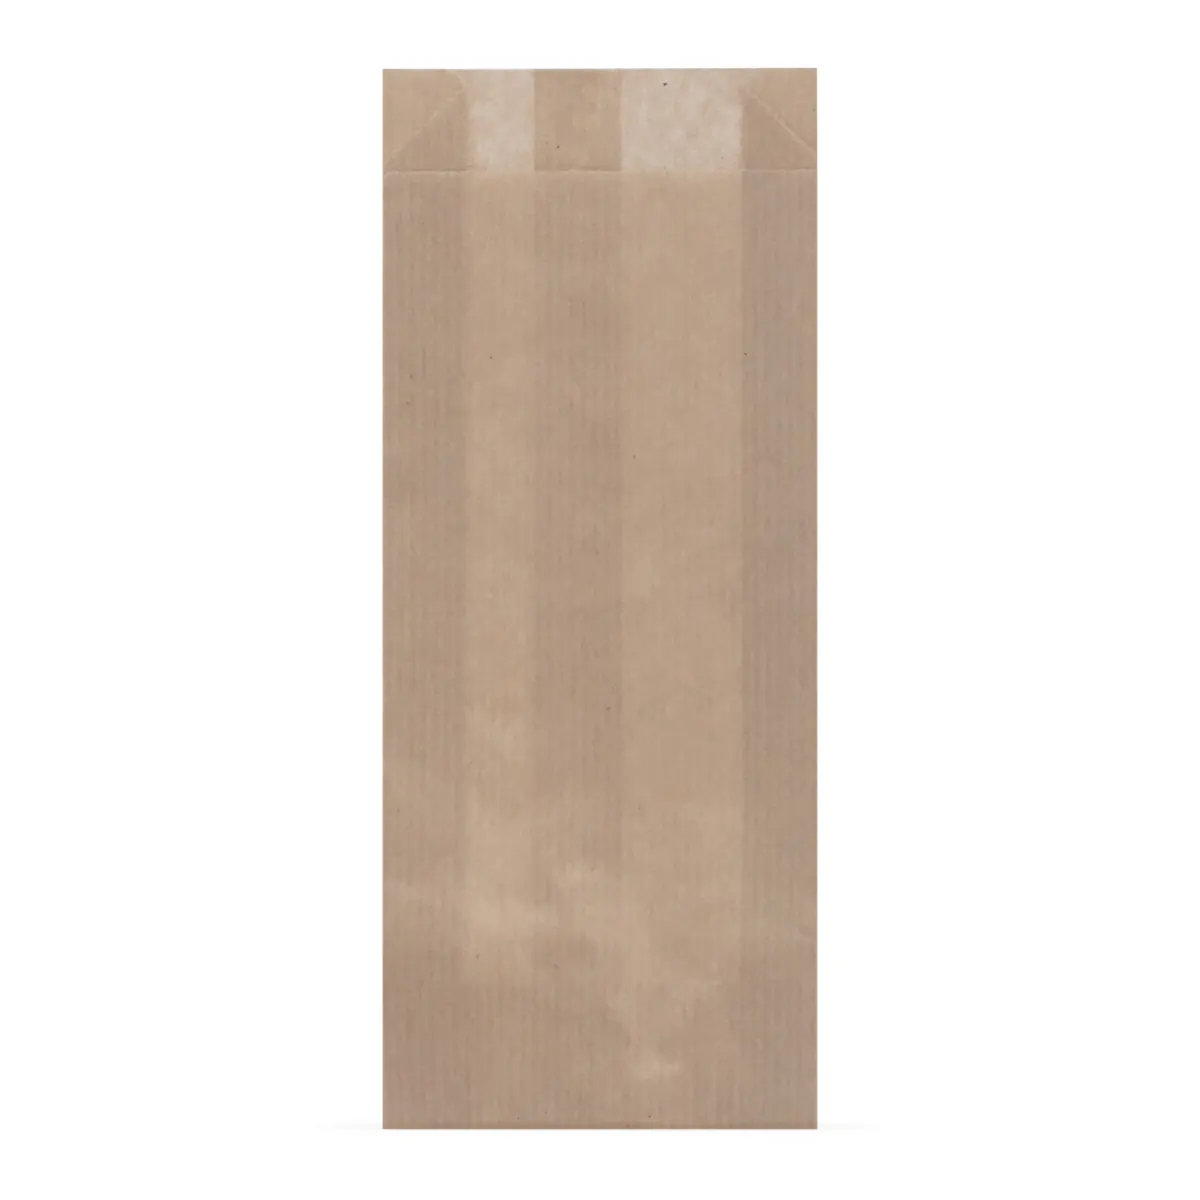 Пакет бумажный V-дно 80х20х200мм крафт коричневый ПОД СТОЛОВЫЕ ПРИБОРЫ 100шт/уп 2000шт/кор